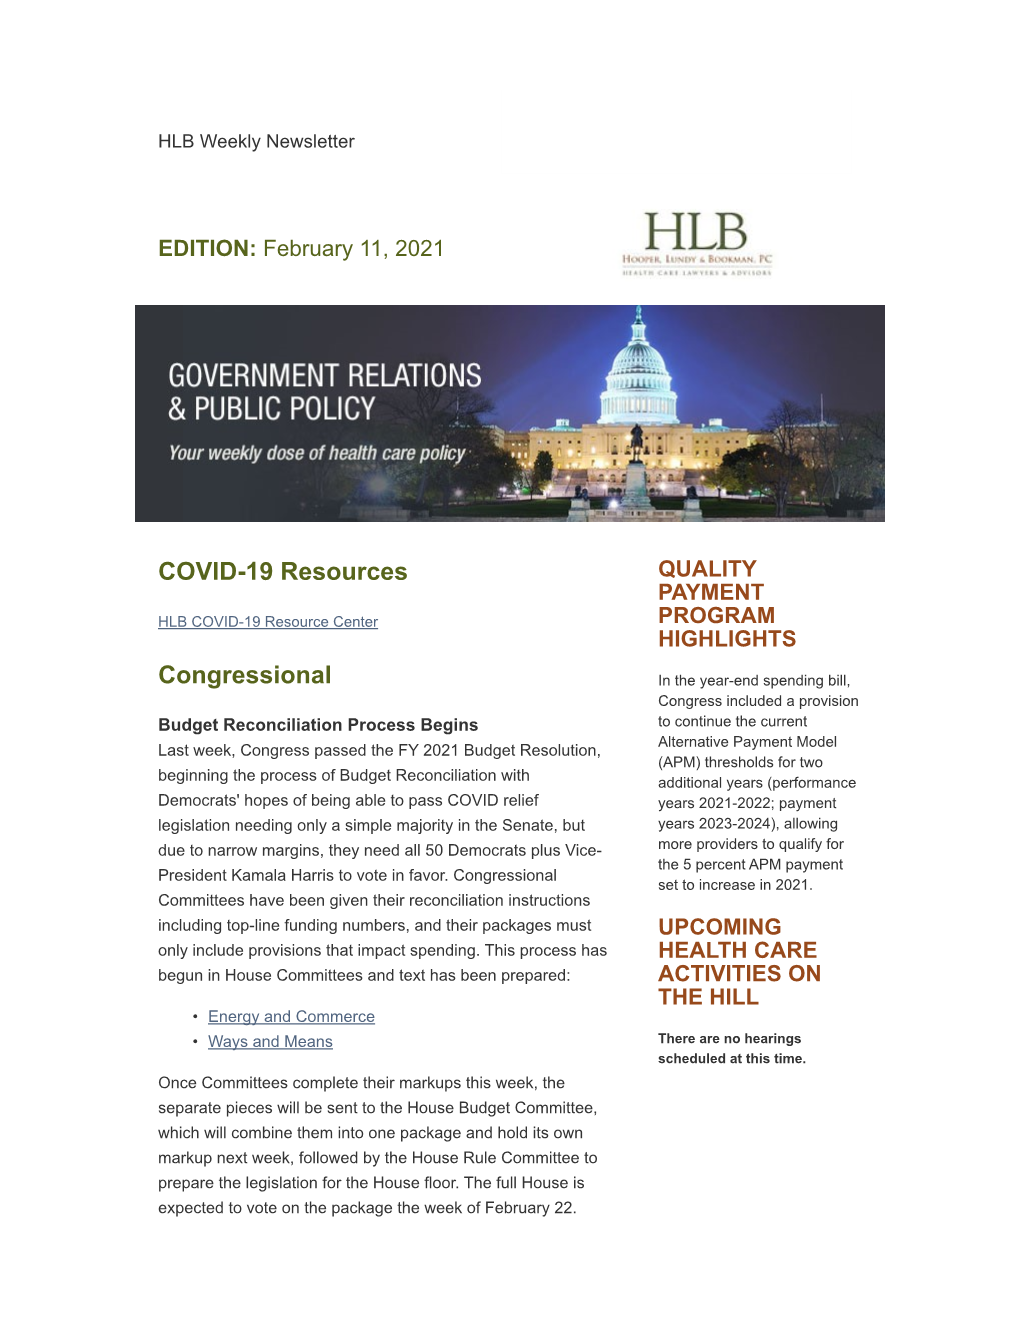 HLB Weekly Health Policy Update February 11, 2021